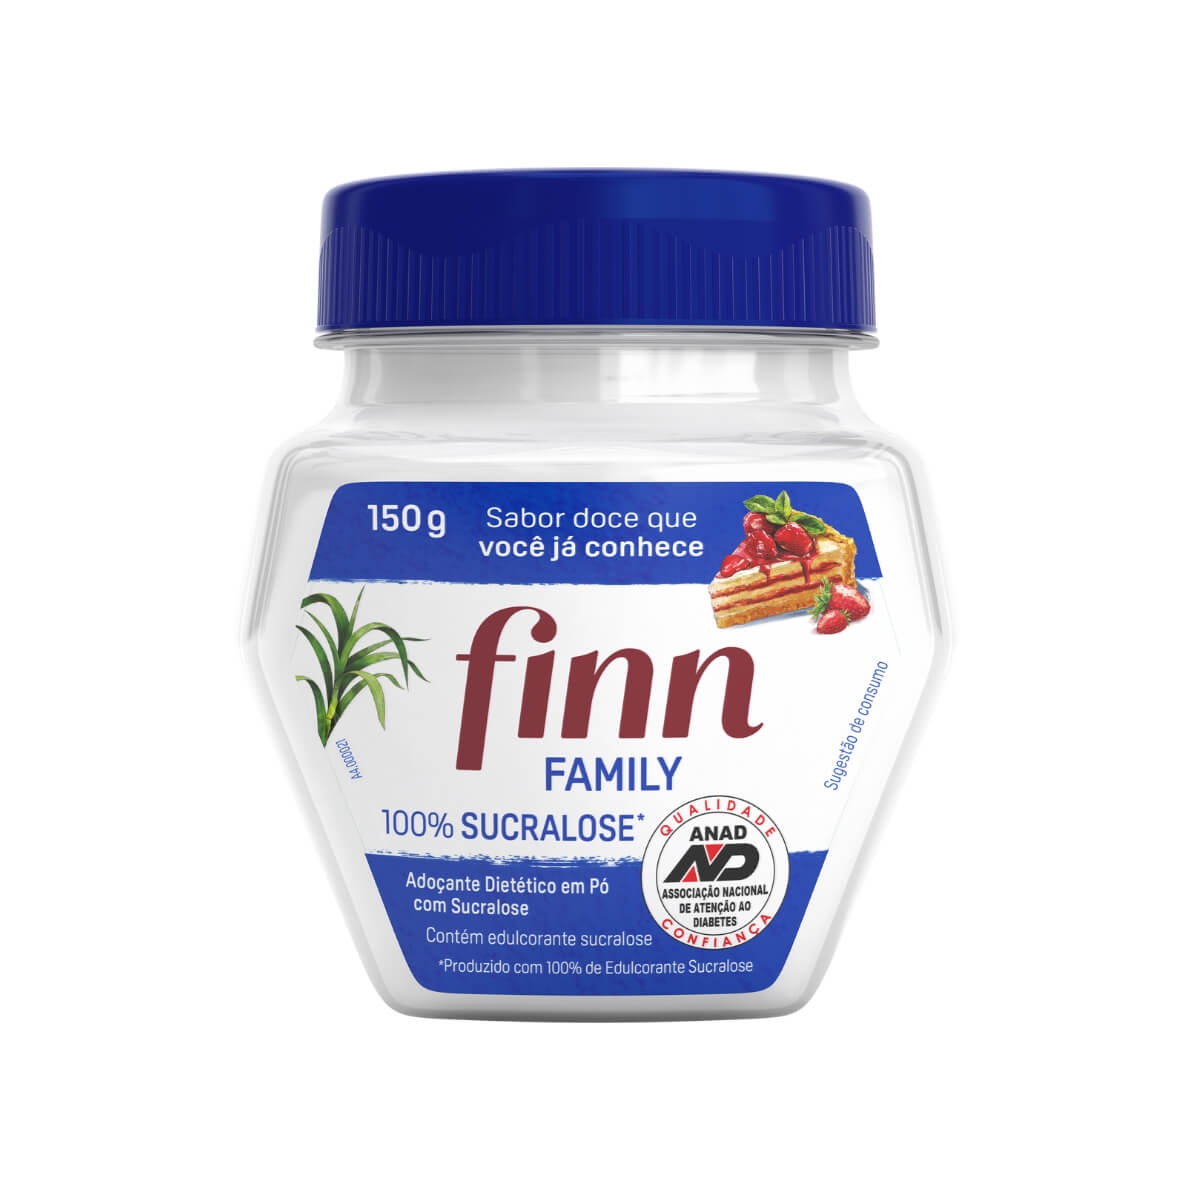 Adoçante Finn Family Sucralose 150g